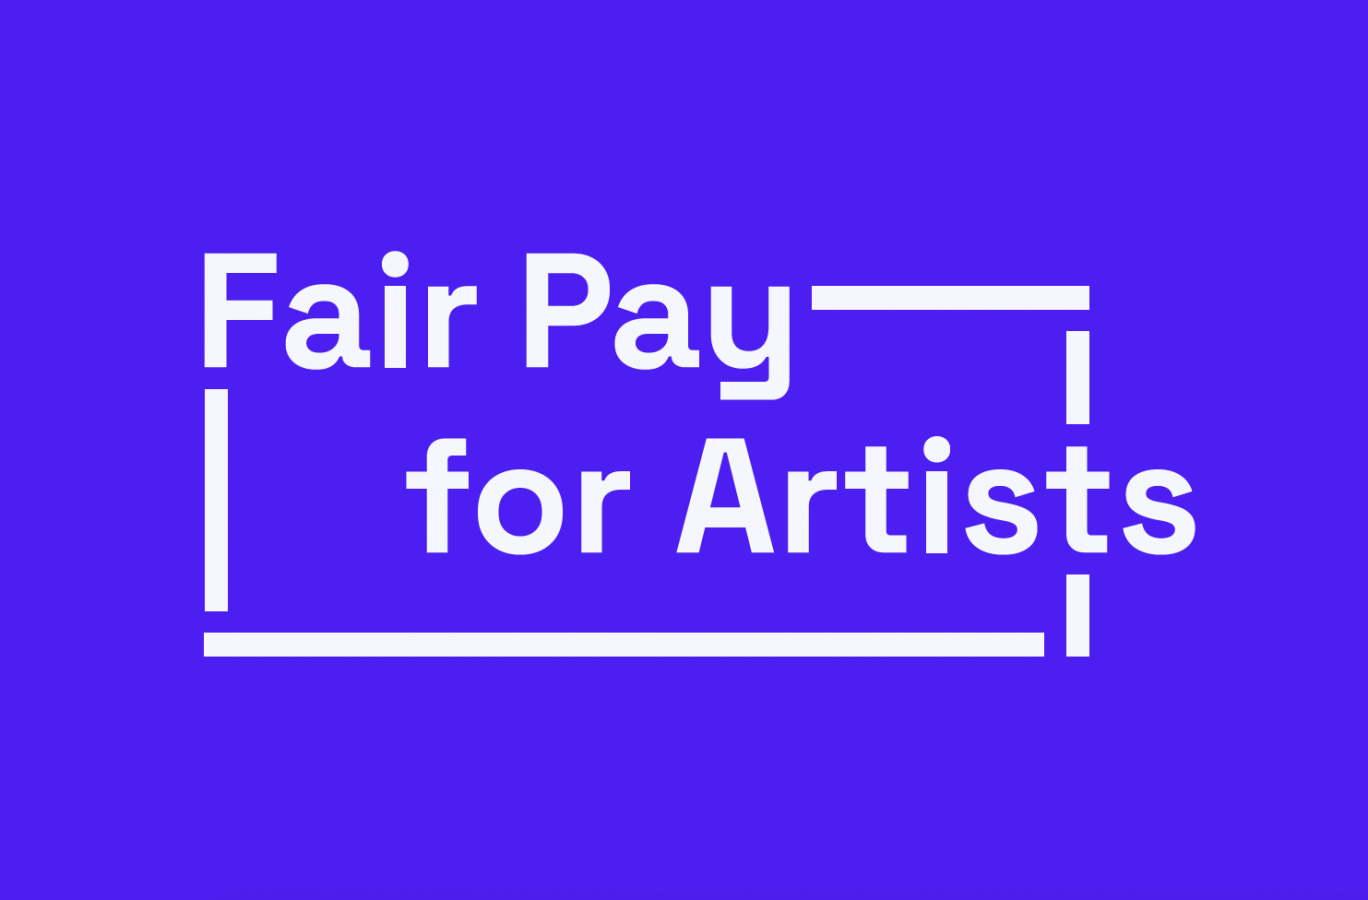 Valkoinen teksti Fair Pay for Artists sinisellä pohjalla